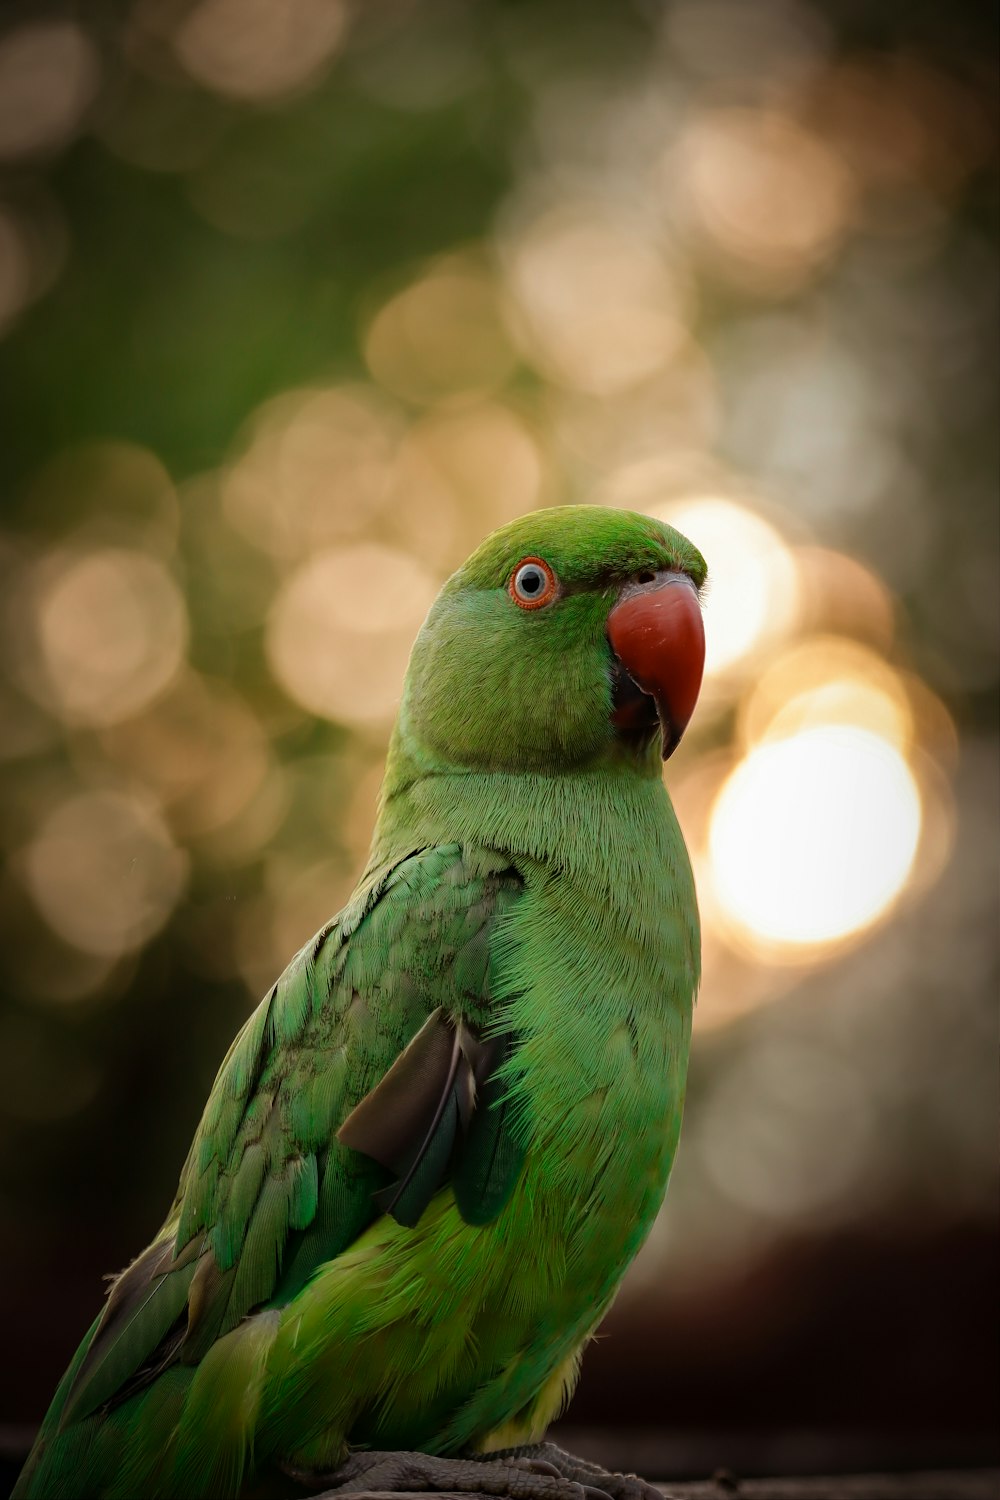 green bird in tilt shift lens